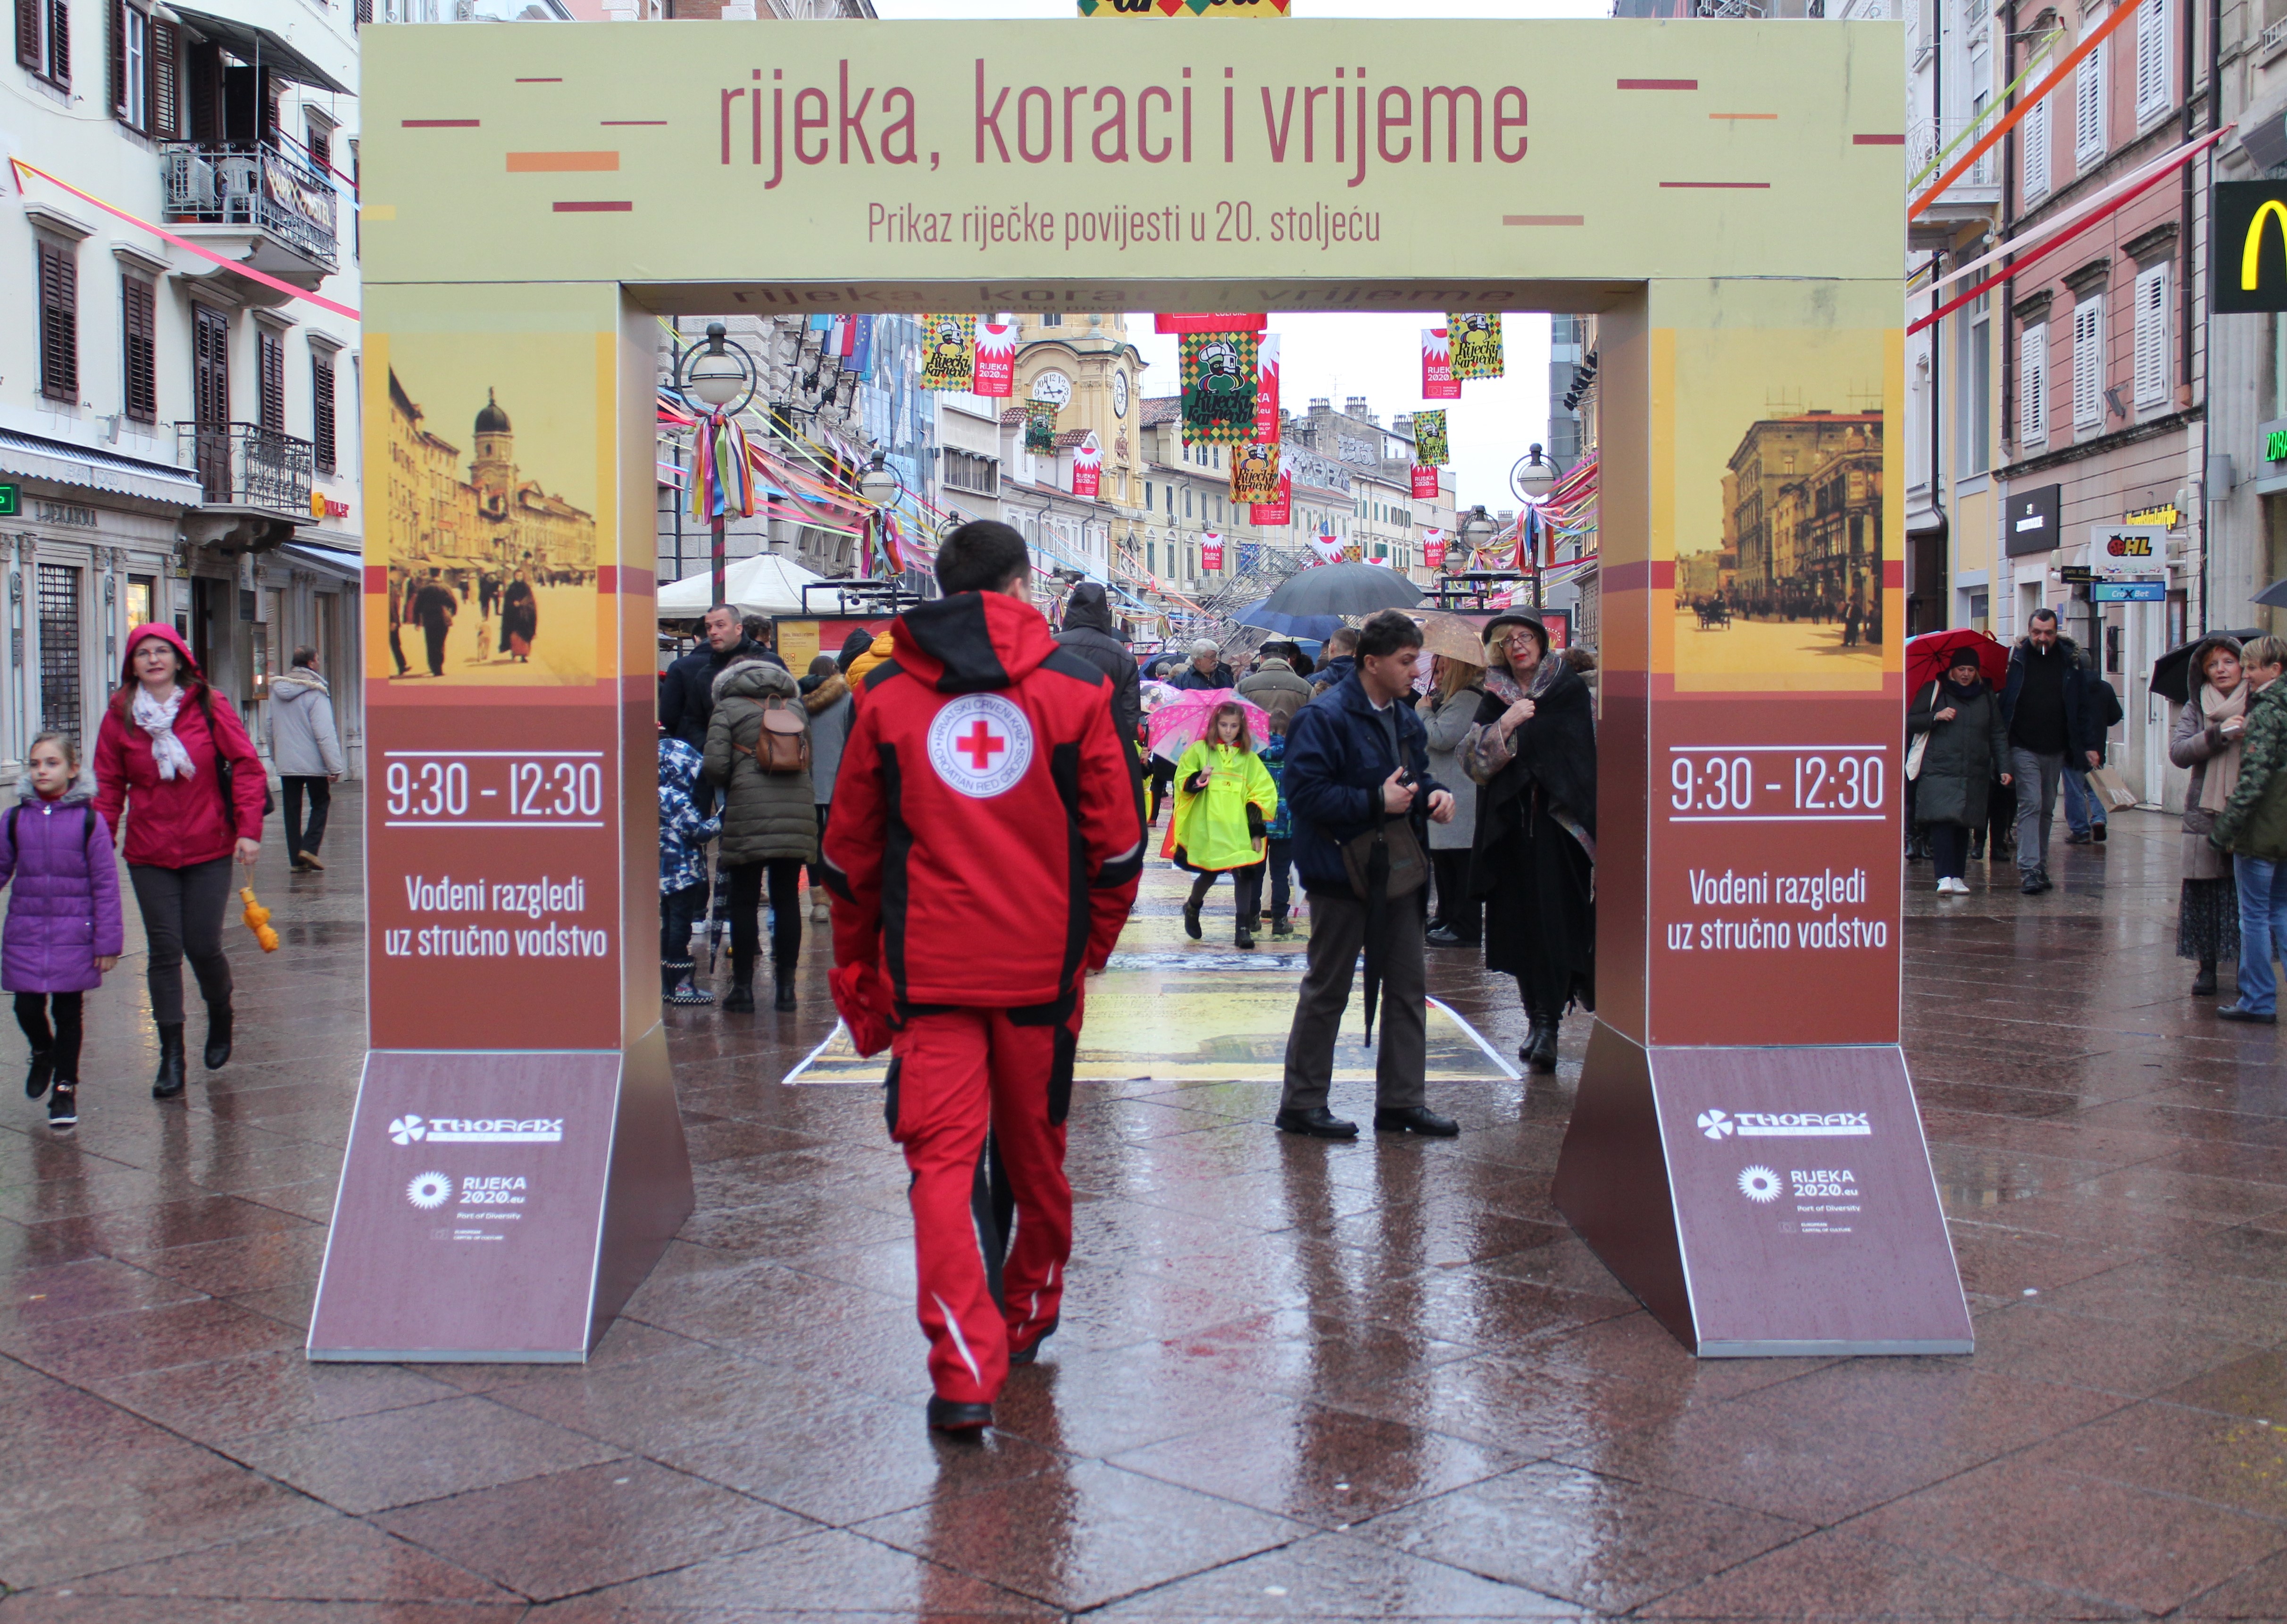 Volonteri društava Crvenog križa Primorsko-goranske županije sudjelovali su na spaktakularnom otvorenju Europske prijestolnice kulture